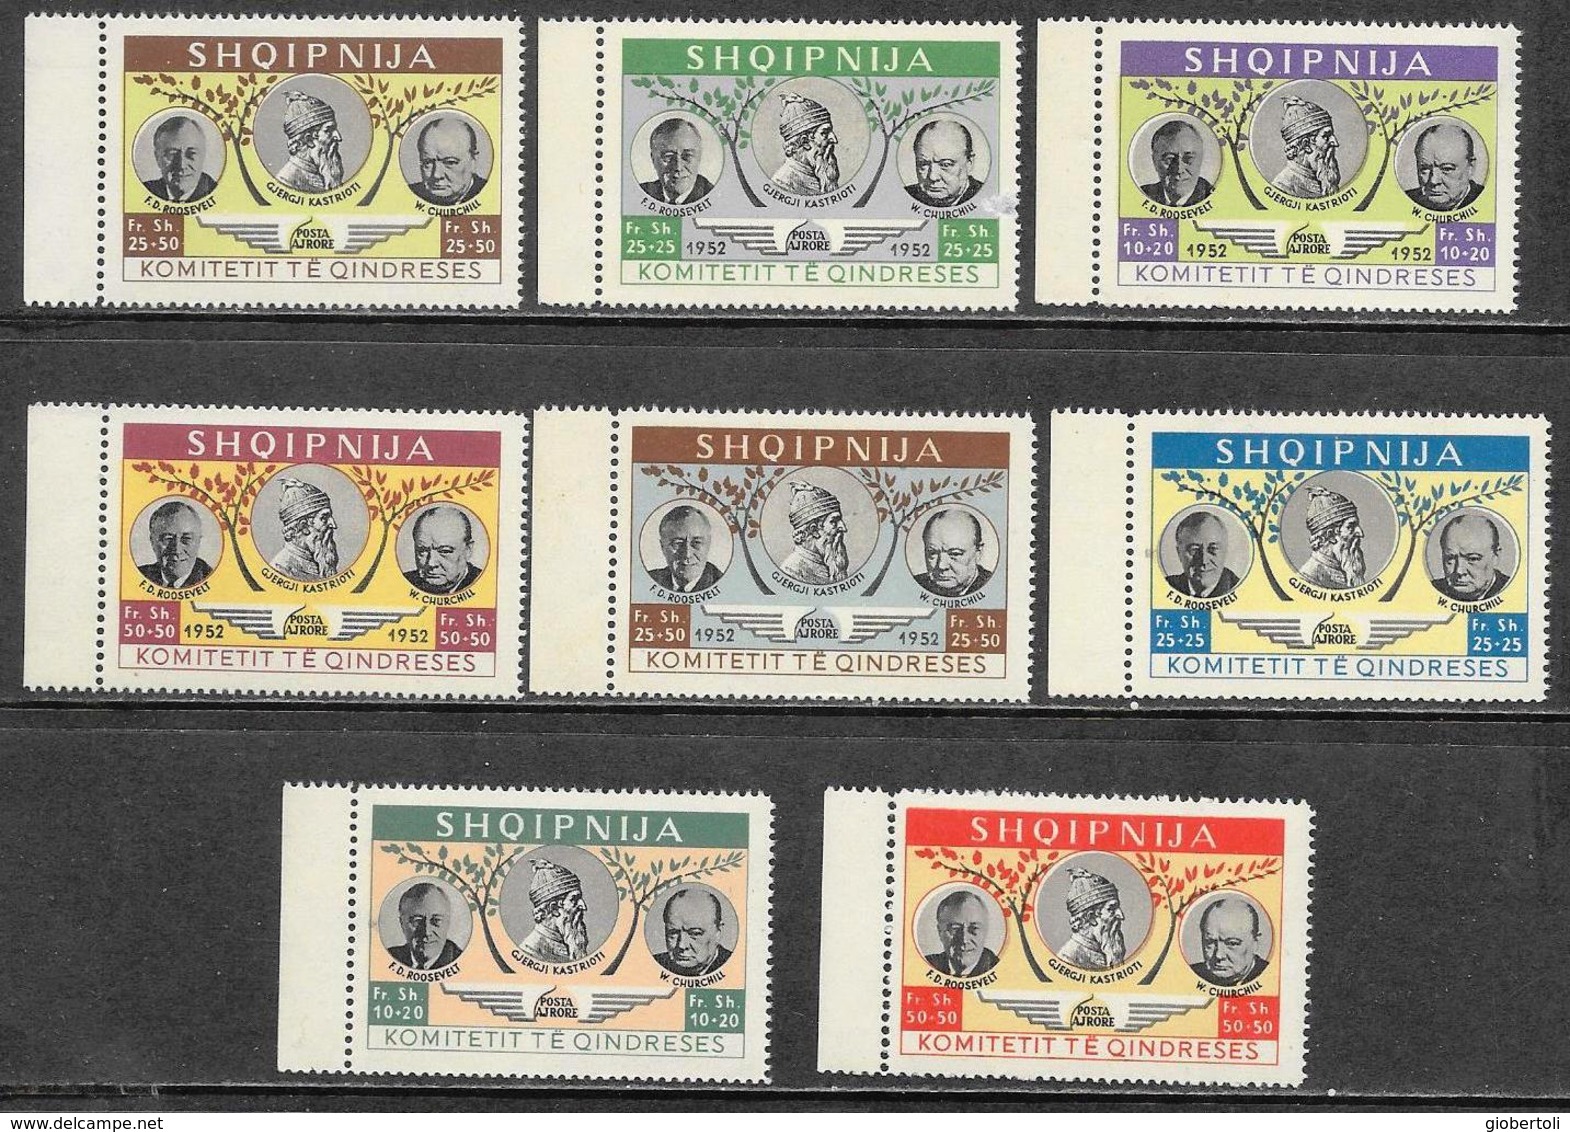 Albania/Albanie: Francobolli Emessi Nel 1952 Dal Comitato Di Liberazione, Stamps Issued In 1952 By The Liberation Commit - Albania